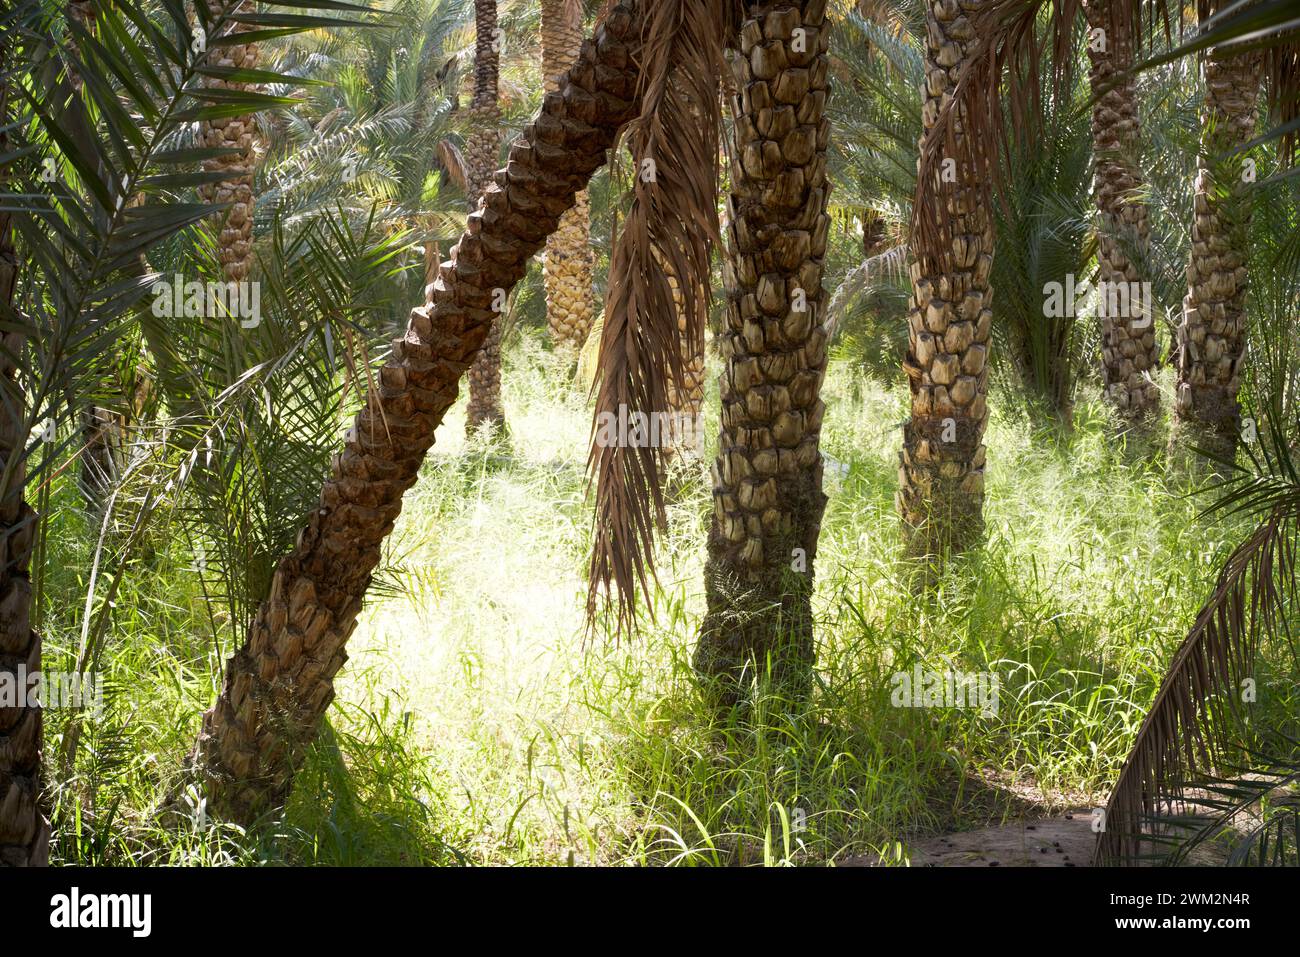 Al Ain Oasis, Abu Dhabi, Emiratos Árabes Unidos, que muestra riego y palmas datileras. Foto de stock